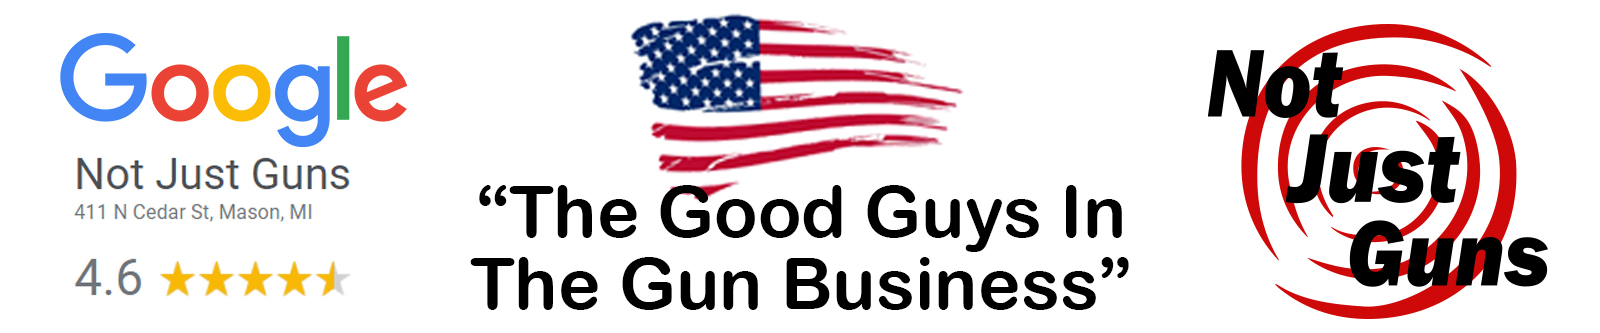 Not Just Guns Google Good Guys